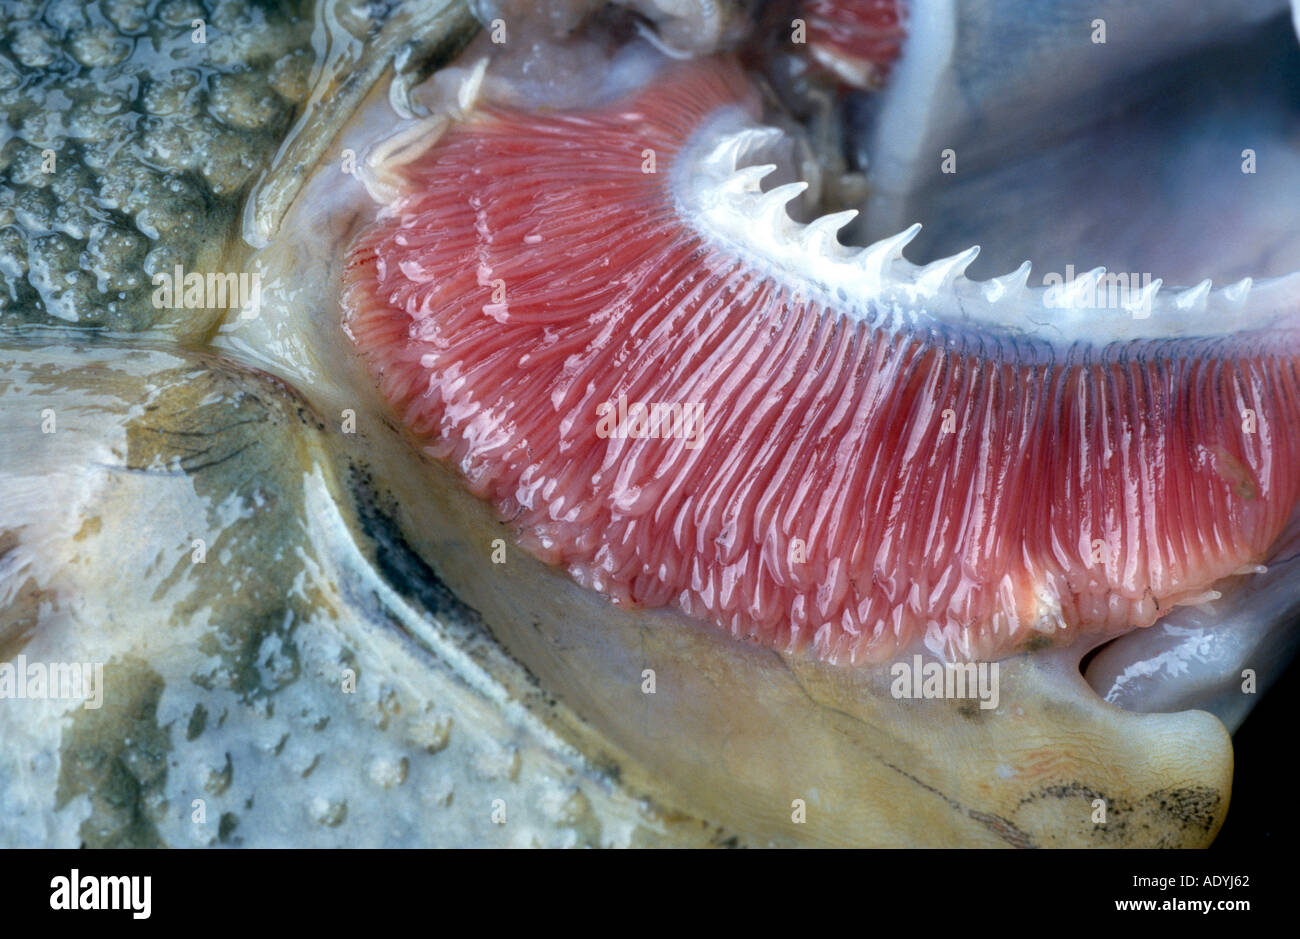 La passera pianuzza, europea Passera pianuzza (Platichthys flesus), dettaglio del gill. Foto Stock